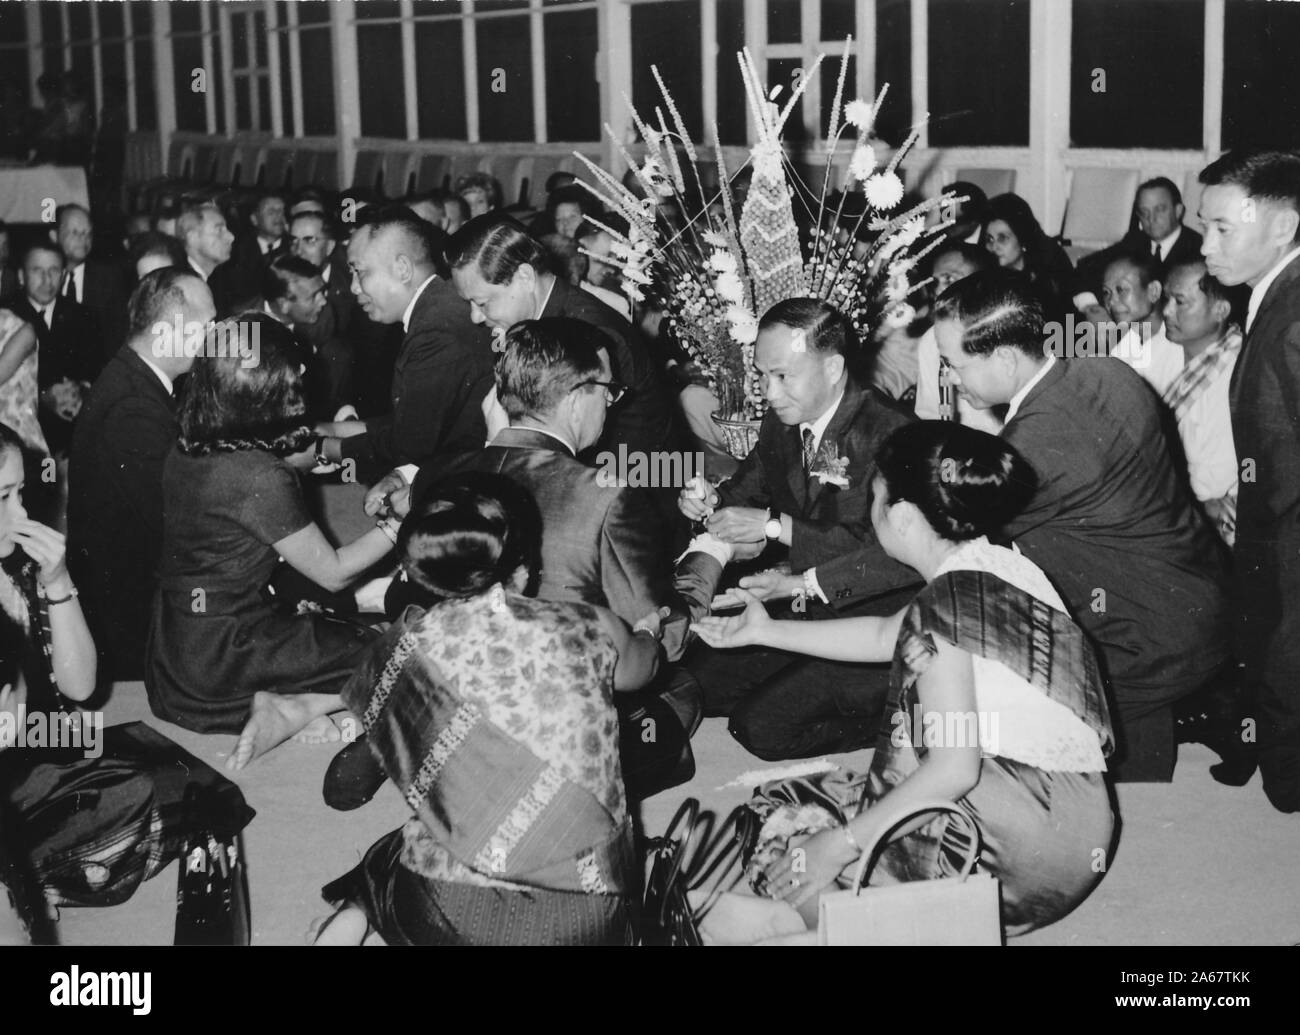 Un groupe d'hommes et de femmes habillés formellement s'assoit sur le sol, certains recevant des bracelets Sai Sin, lors d'une cérémonie Baci à une fonction conjointe de l'armée américaine et de l'armée royale thaïlandaise, photographiée pendant la guerre du Vietnam, 1968. () Banque D'Images